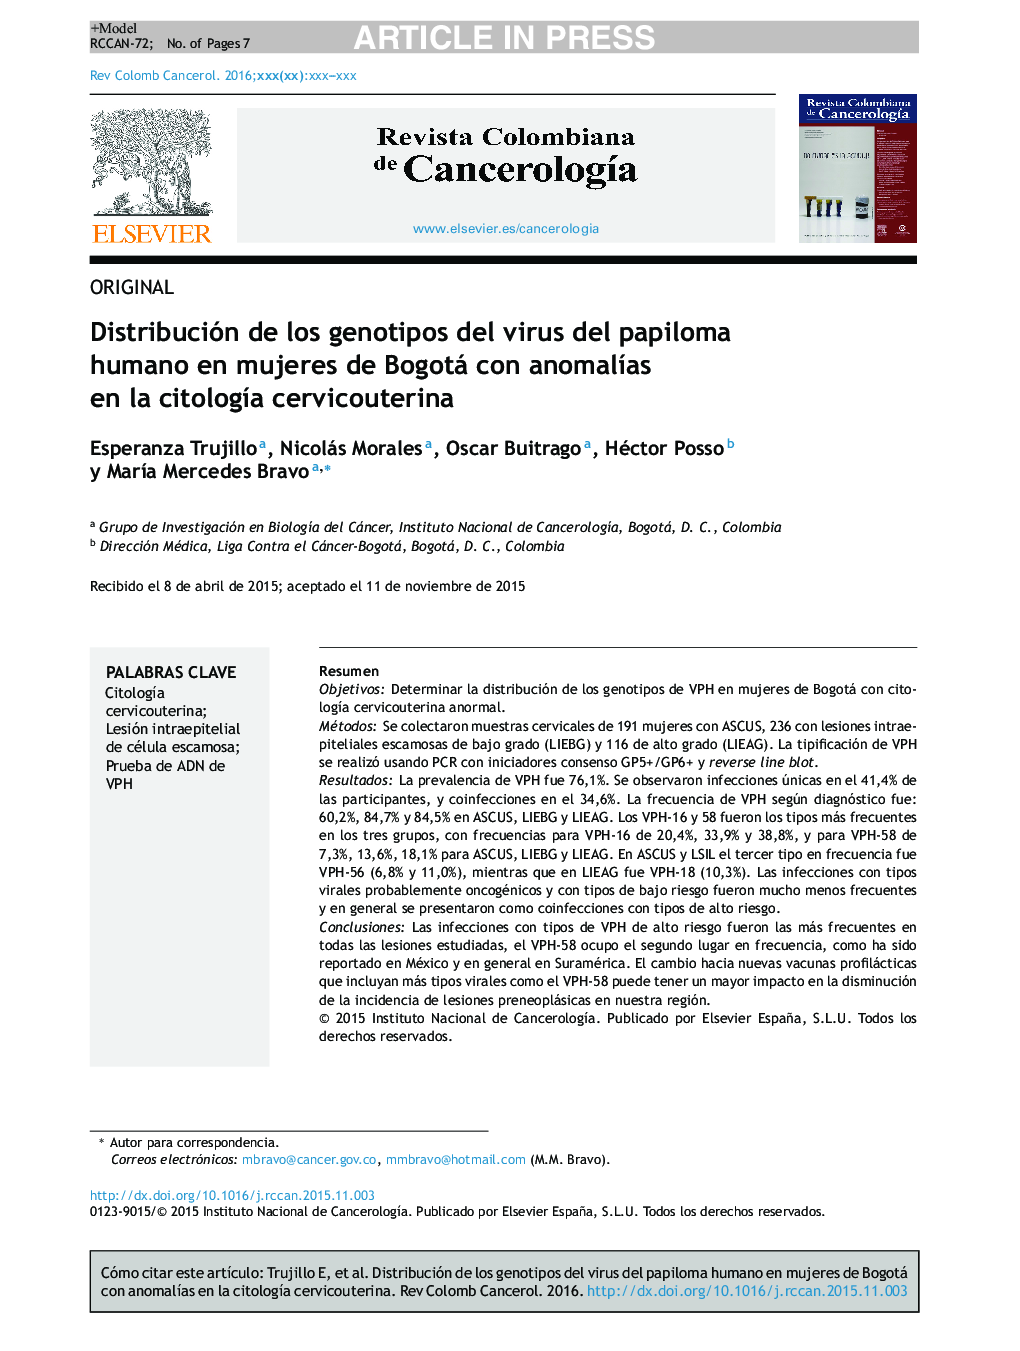 Distribución de los genotipos del virus del papiloma humano en mujeres de Bogotá con anomalÃ­as en la citologÃ­a cervicouterina